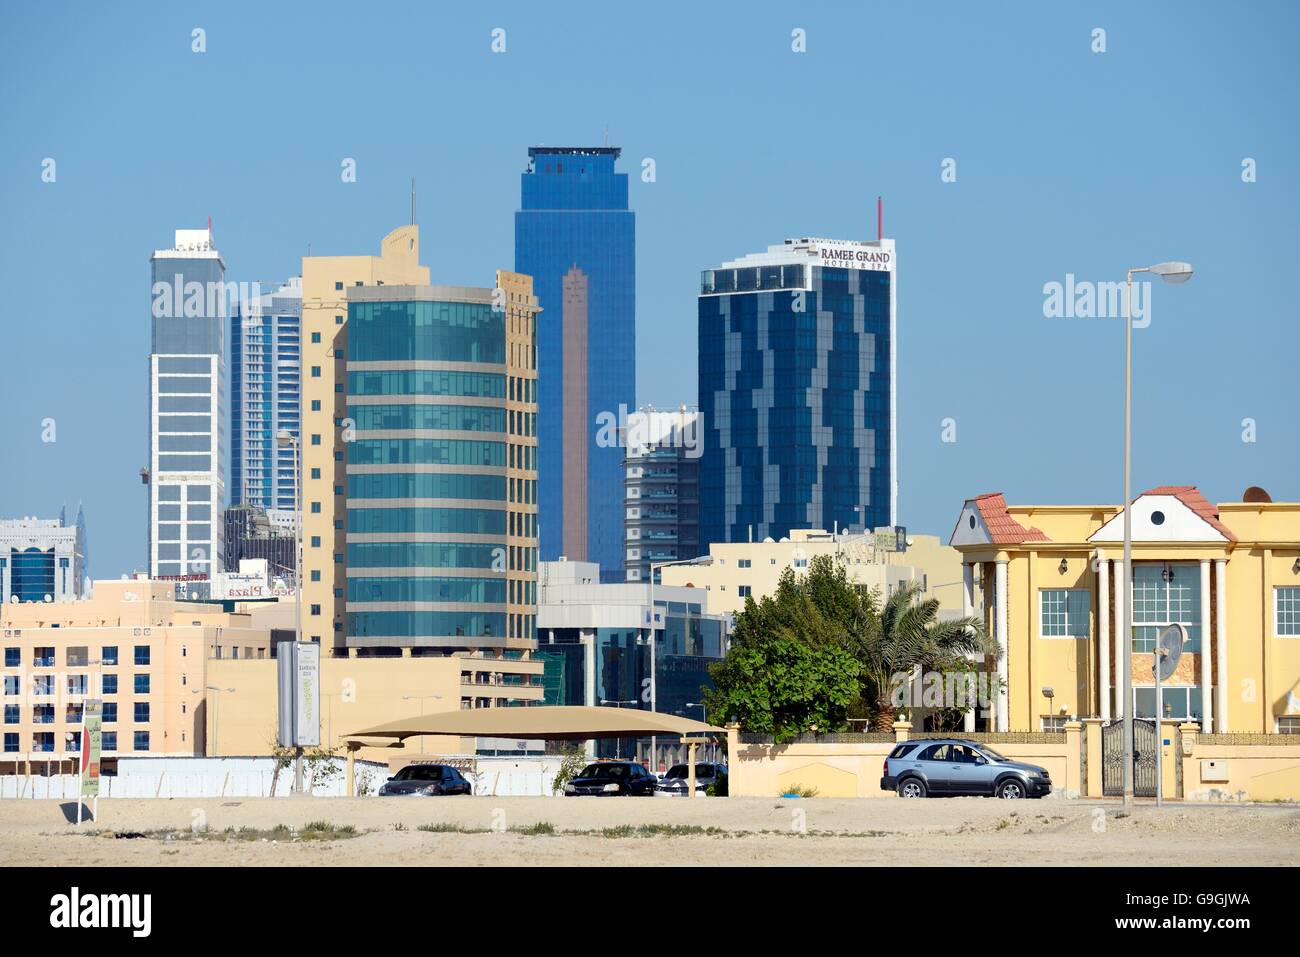 Manama, Bahreïn. seef district. à l'est à l'hôtel Ramee grand hotel et le tour almoayyed aka la tour sombre Banque D'Images